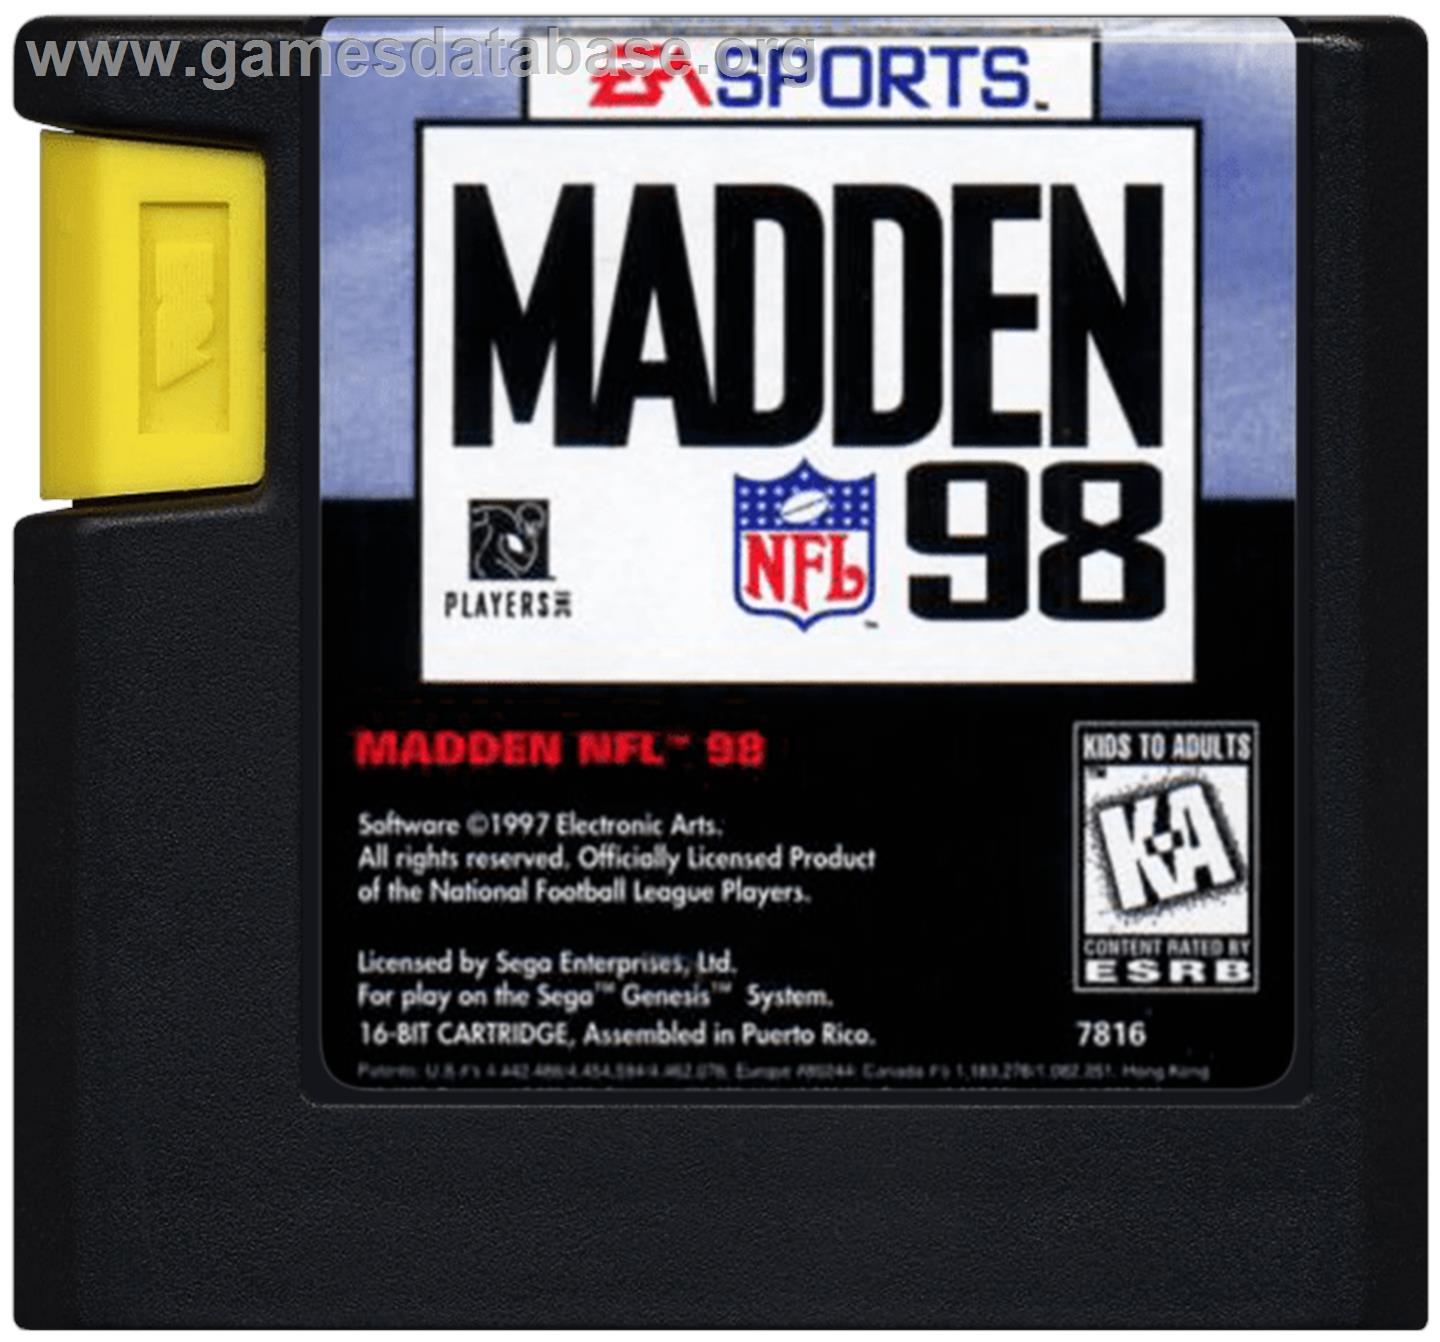 Madden NFL '98 - Sega Genesis - Artwork - Cartridge